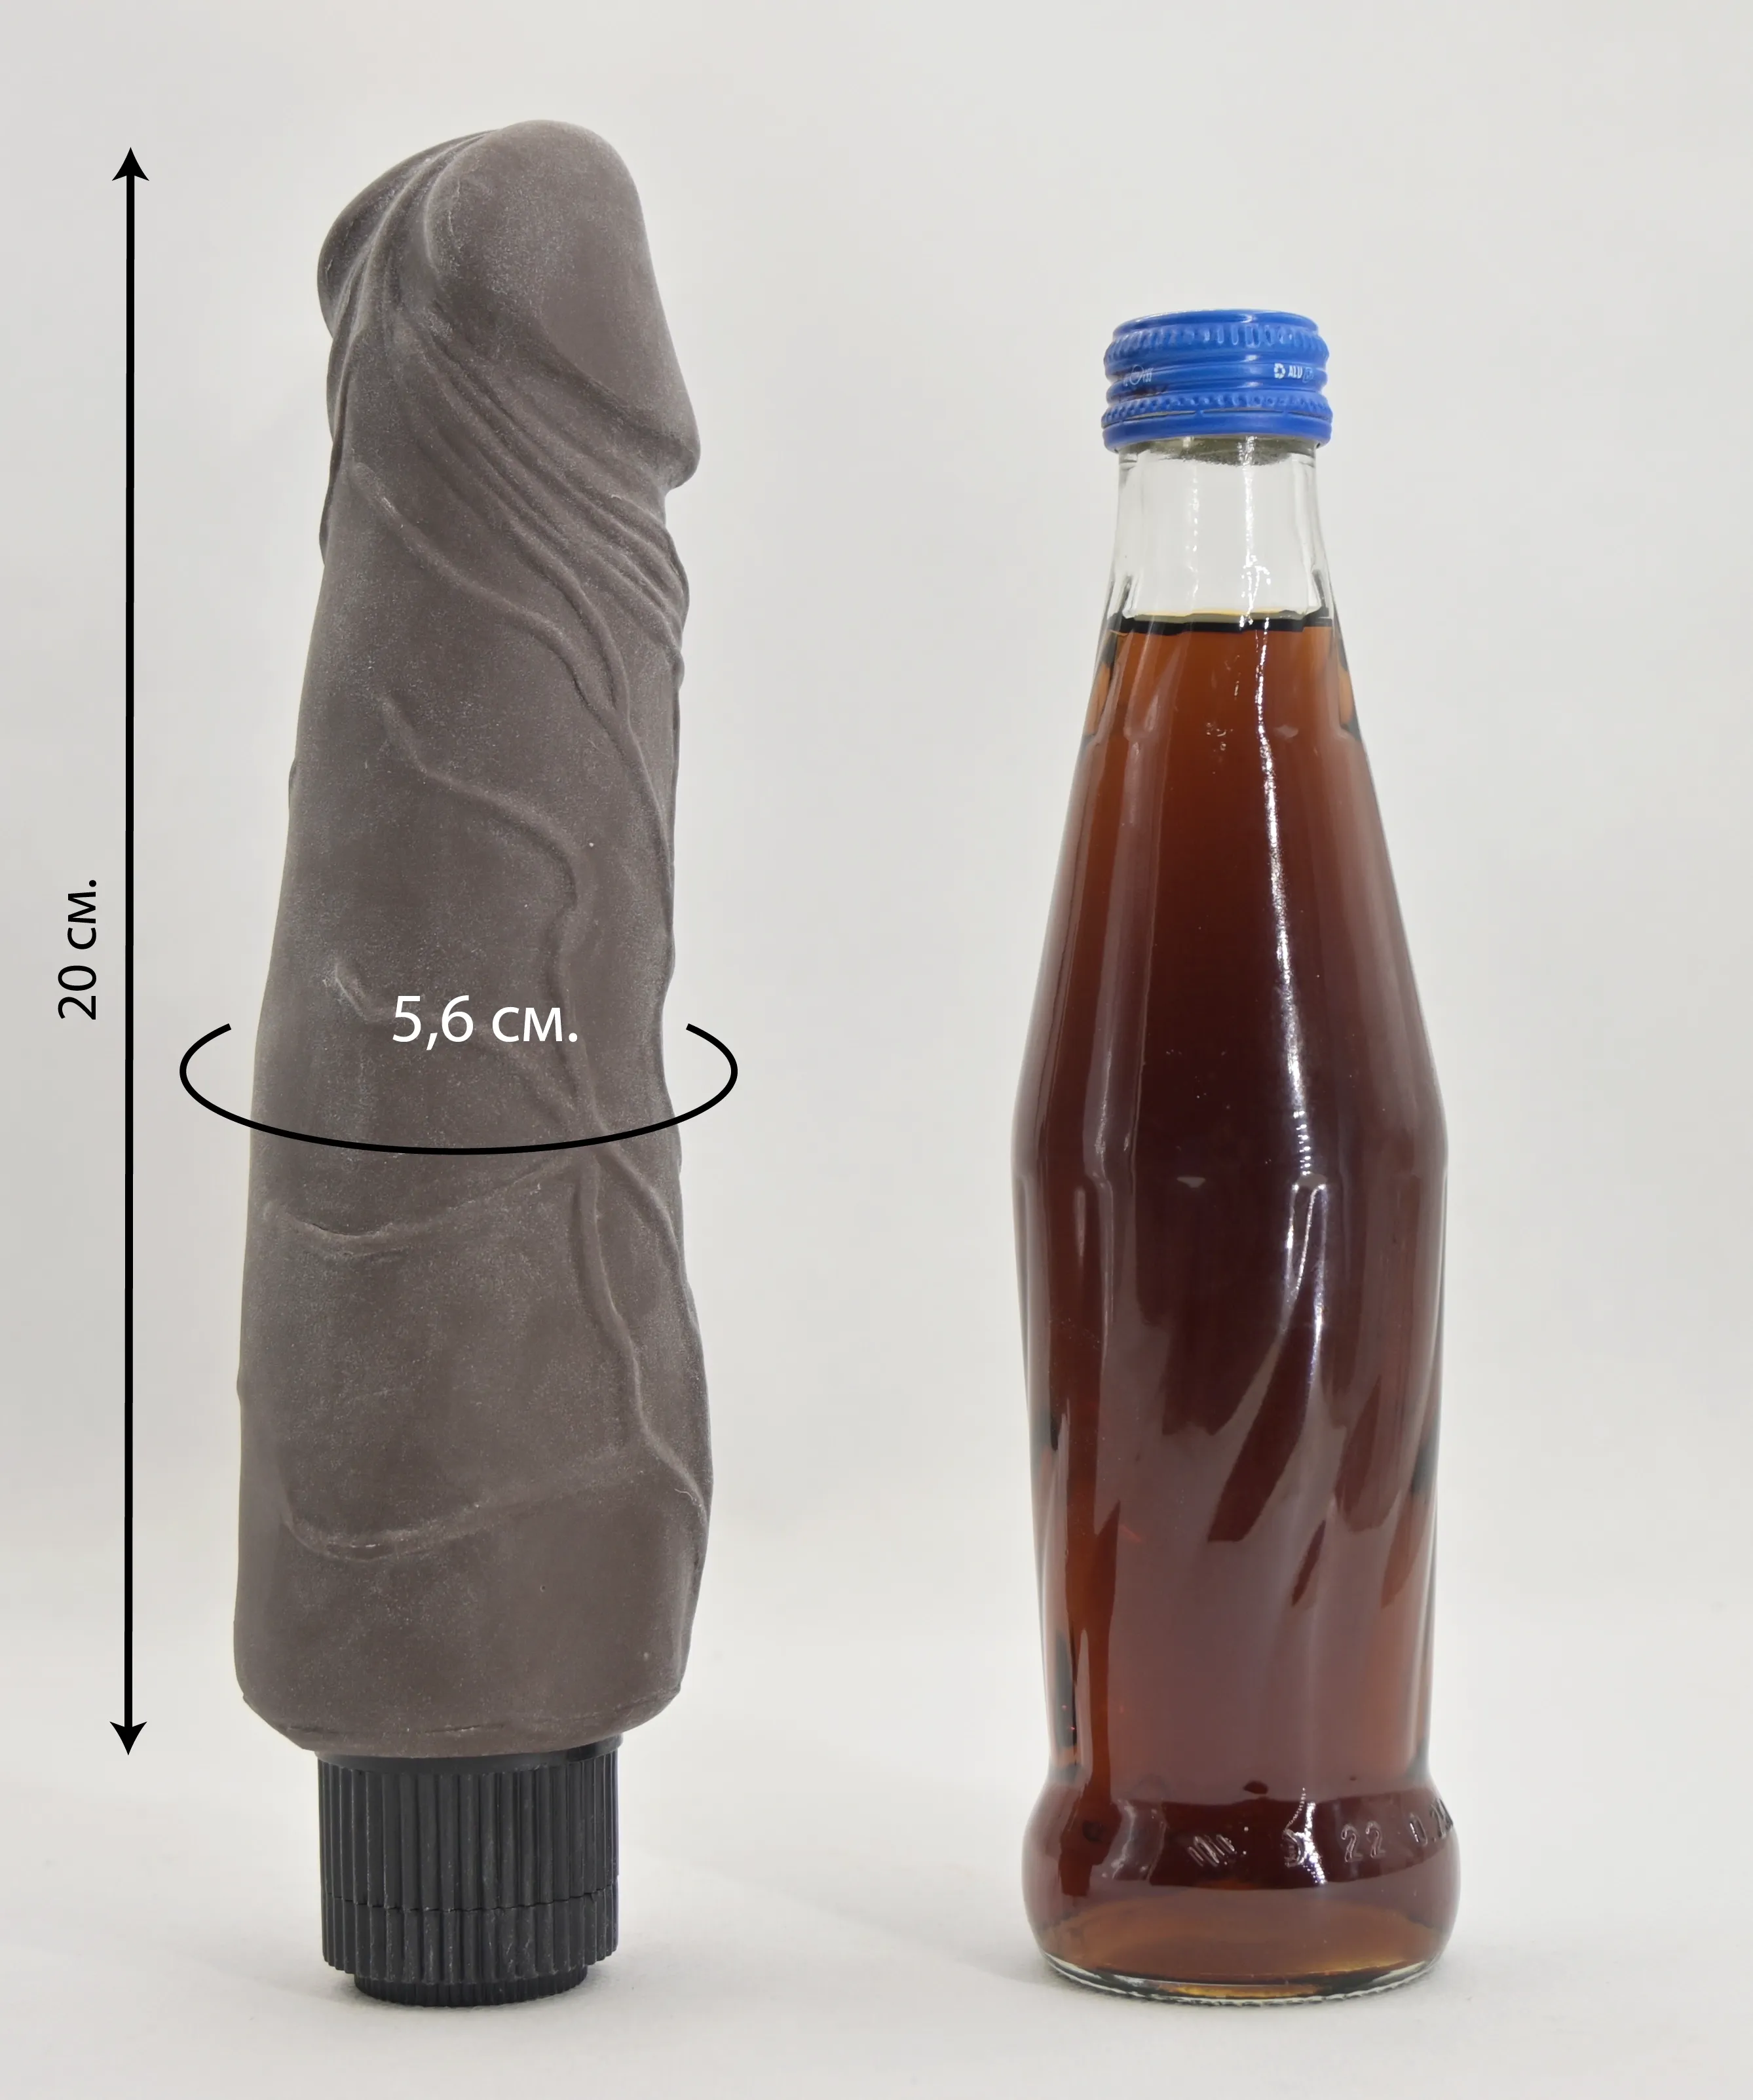 Размеры шоколадного вибратора Greedy Guy Brown в сравнении со стеклянной бутылкой 0,33 л.